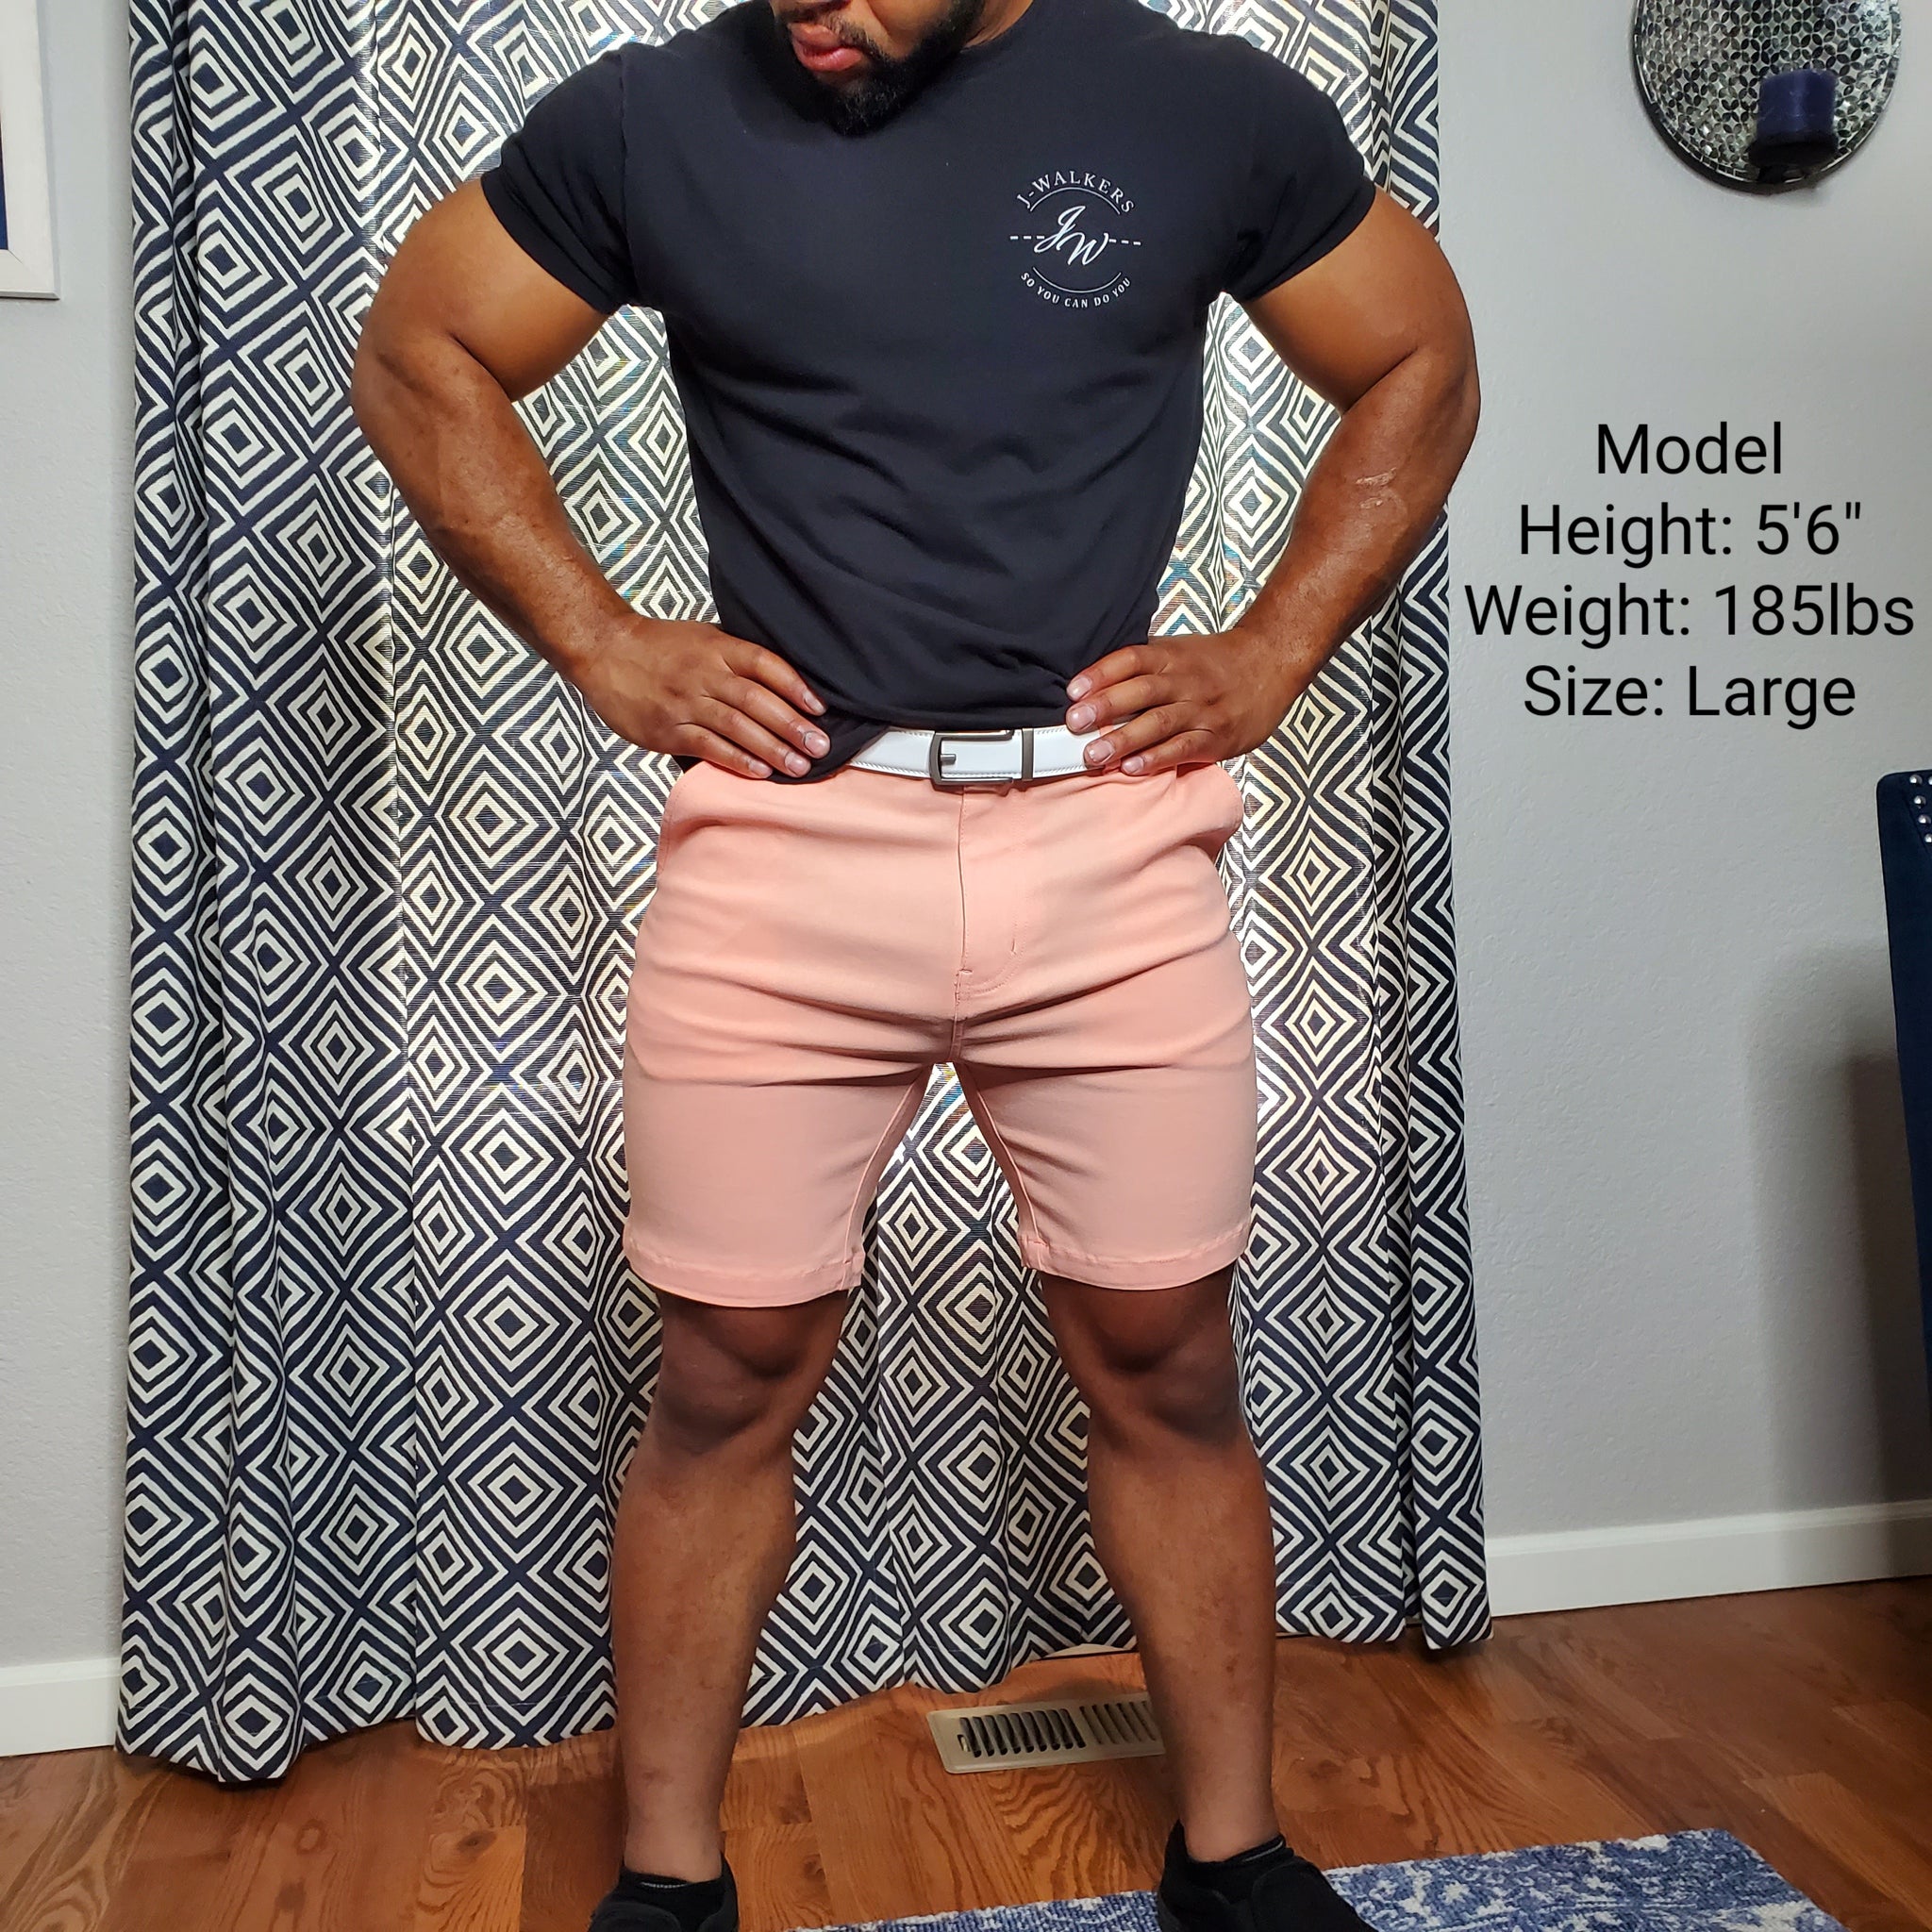 peach shorts mens